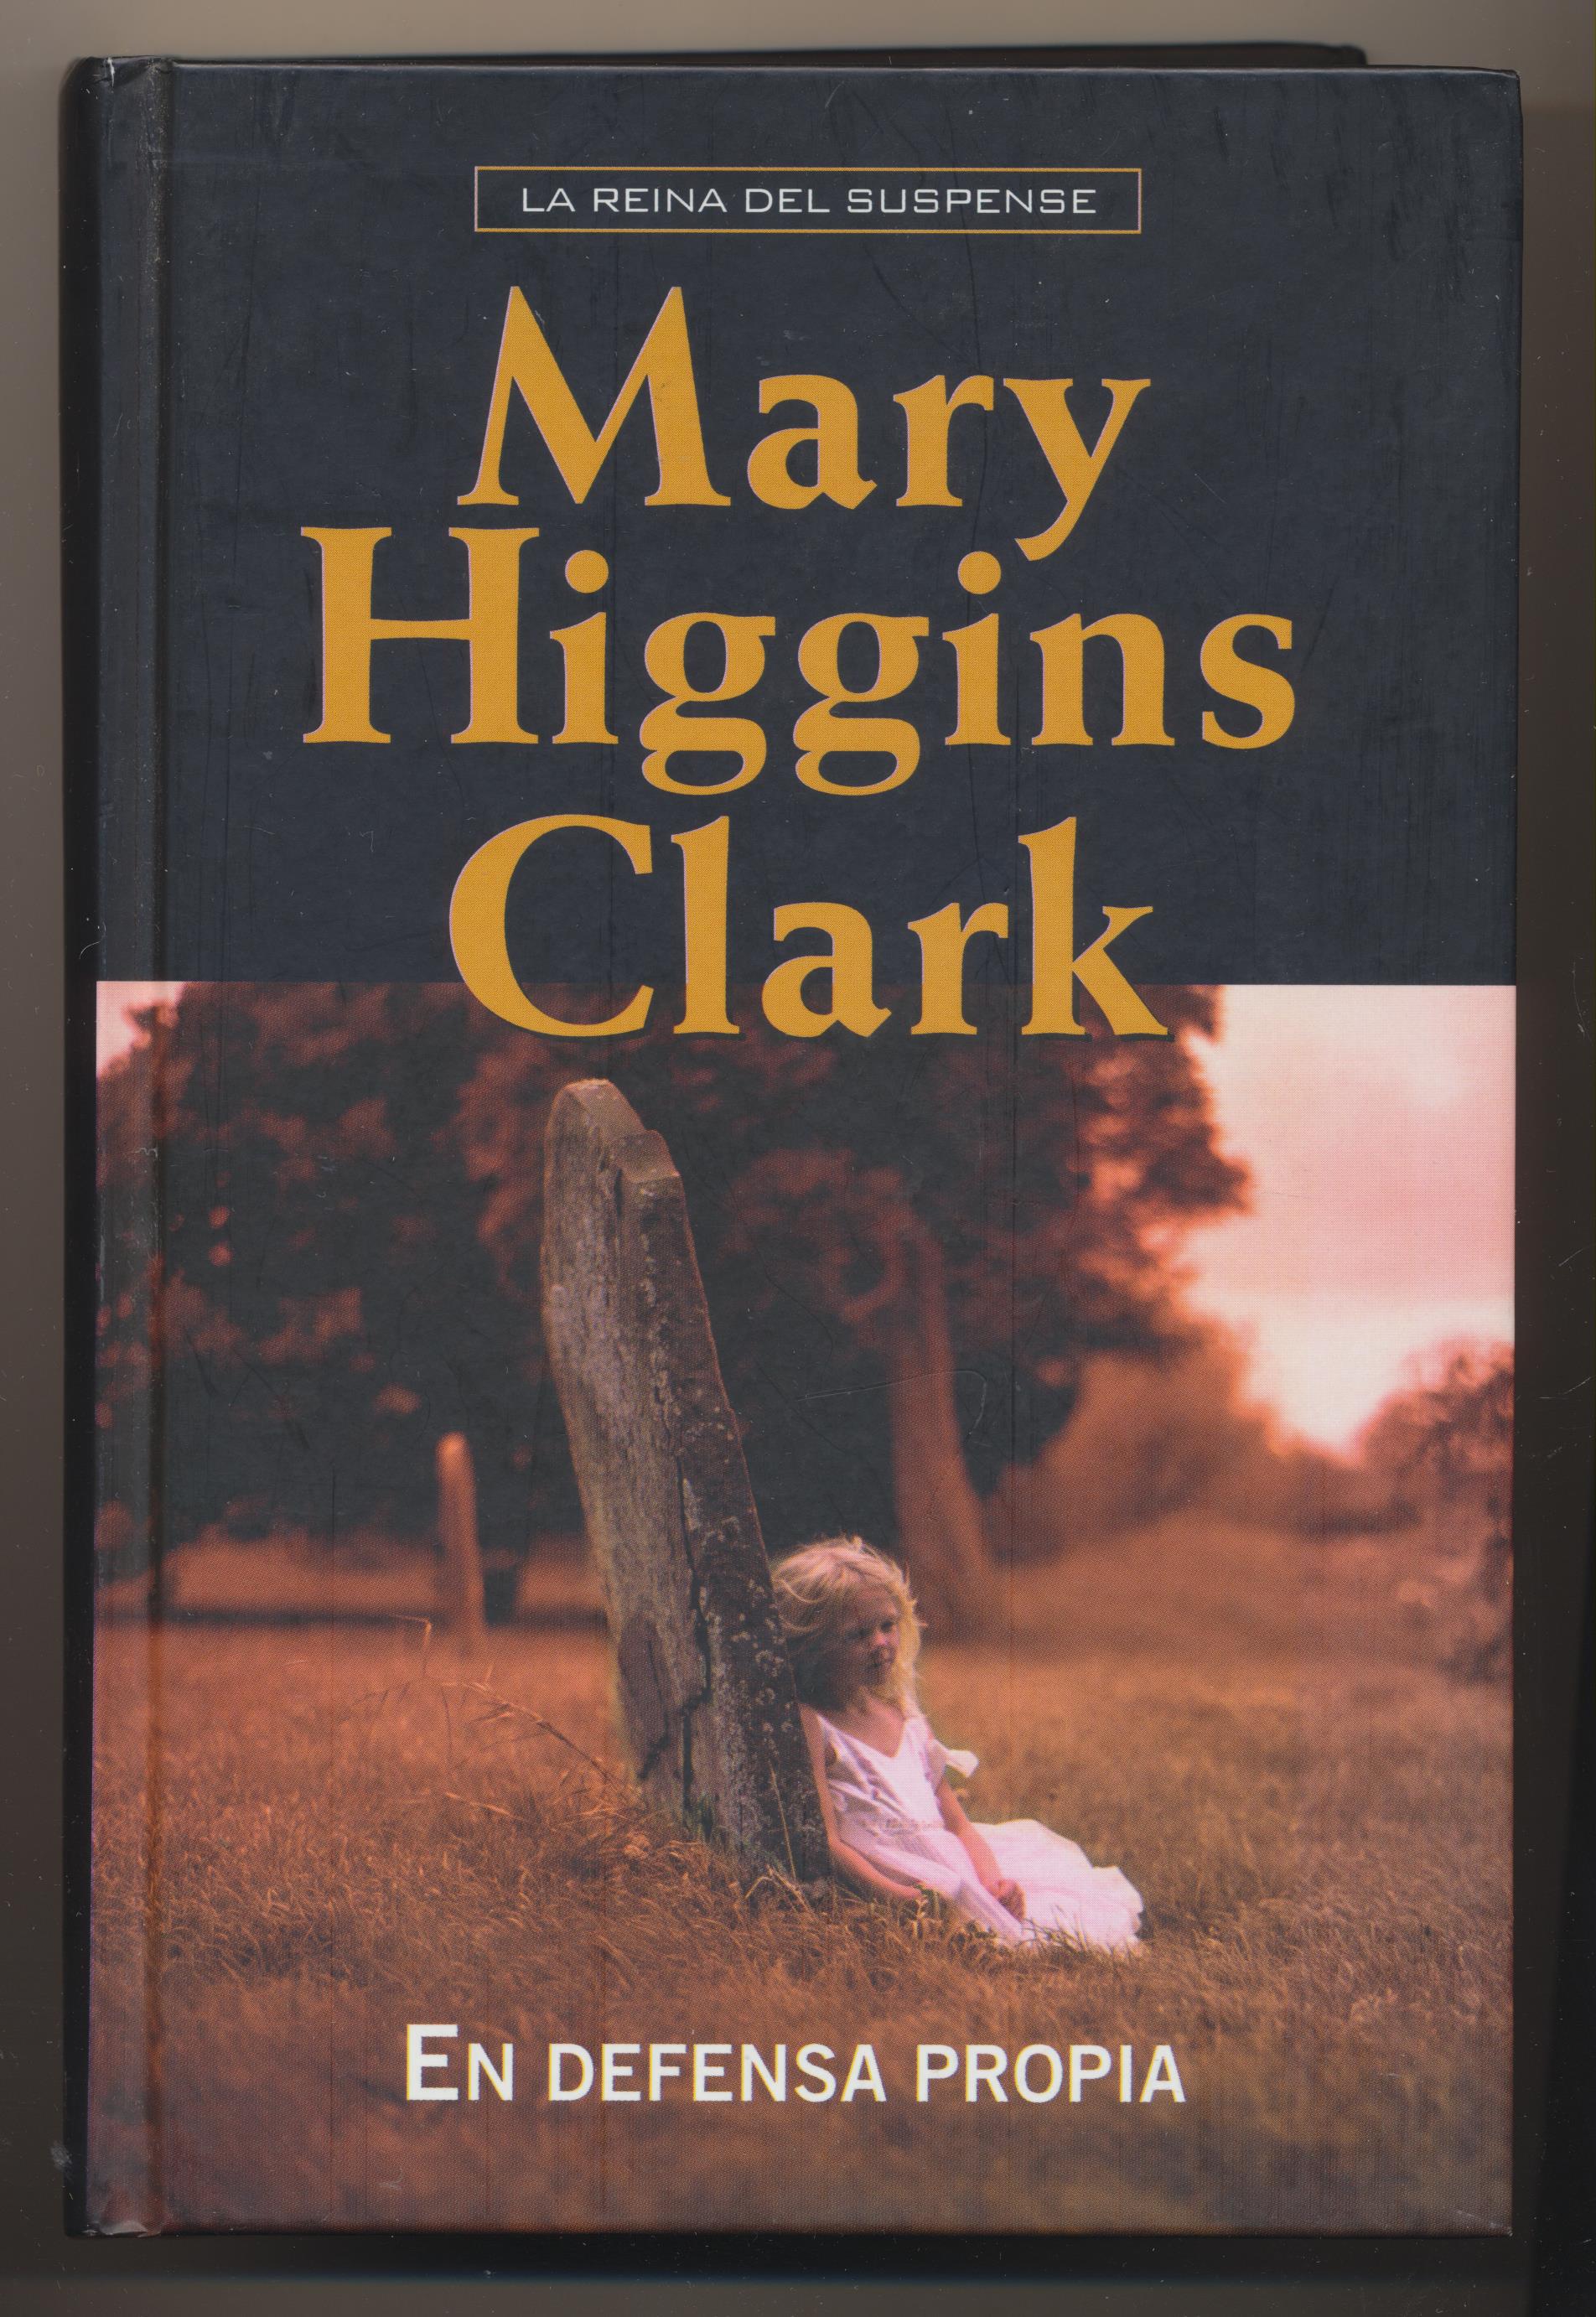 Mary Higgins Clark. En defensa propia. RBA 2009